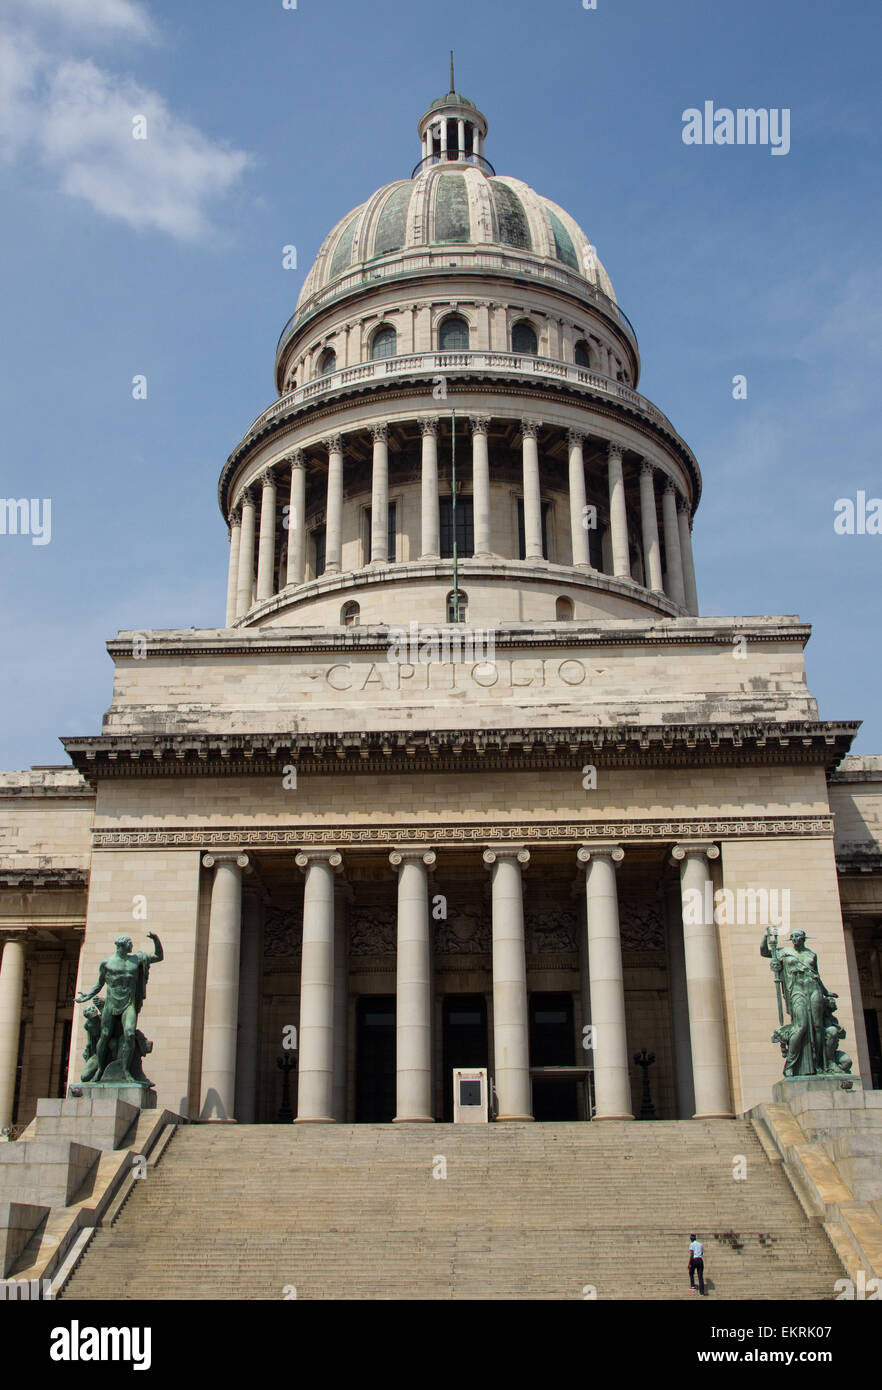 El Capitolio o el edificio de la Capital Nacional, La Habana fue la sede del gobierno cubano hasta 1959,ahora la Academia de Ciencias Foto de stock